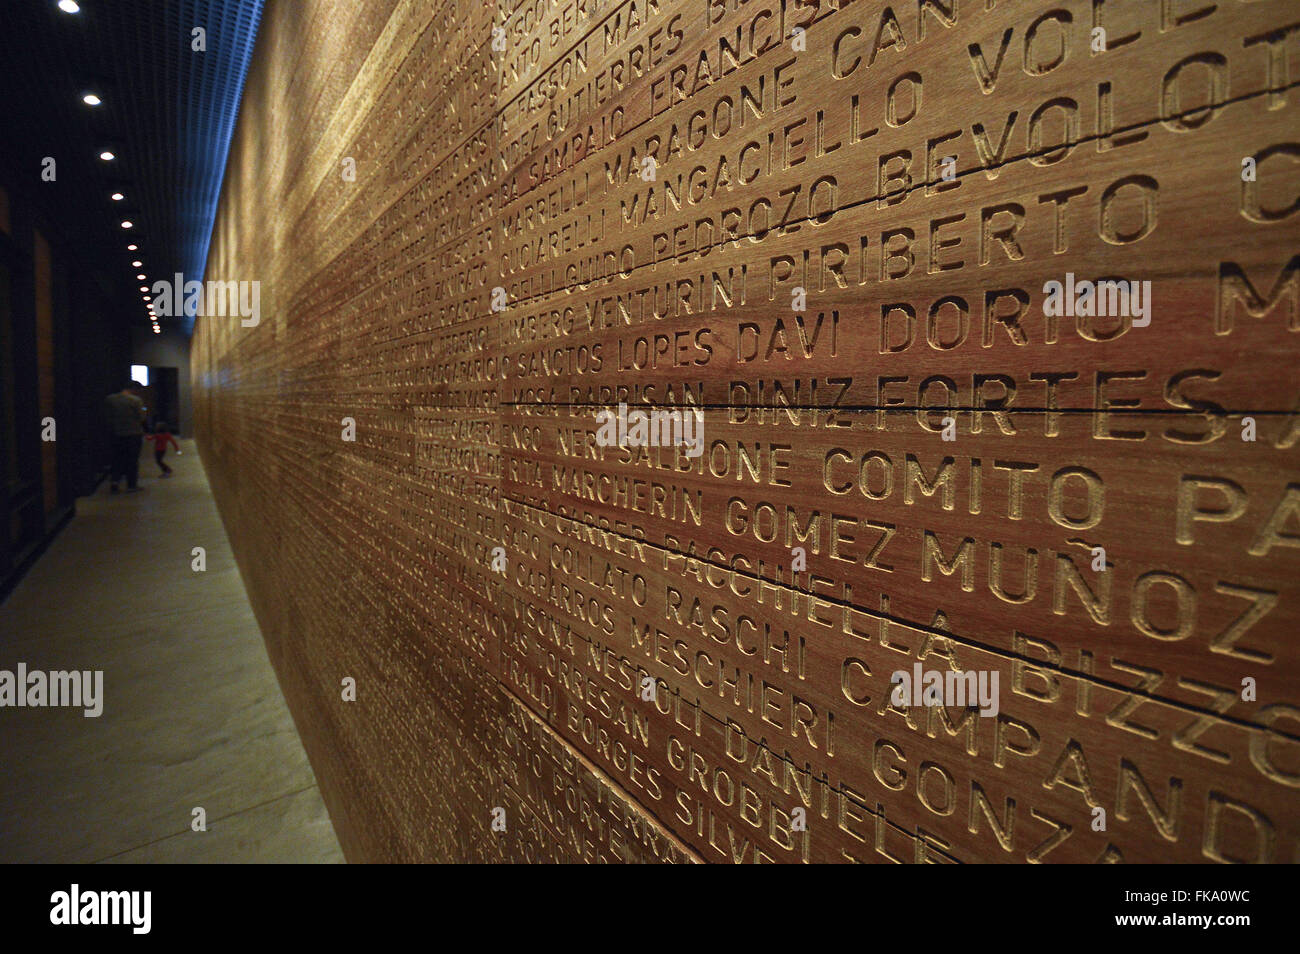 Interior do Museu da Imigração - sobrenomes de imigrantes italianos em painel de madeira Stock Photo